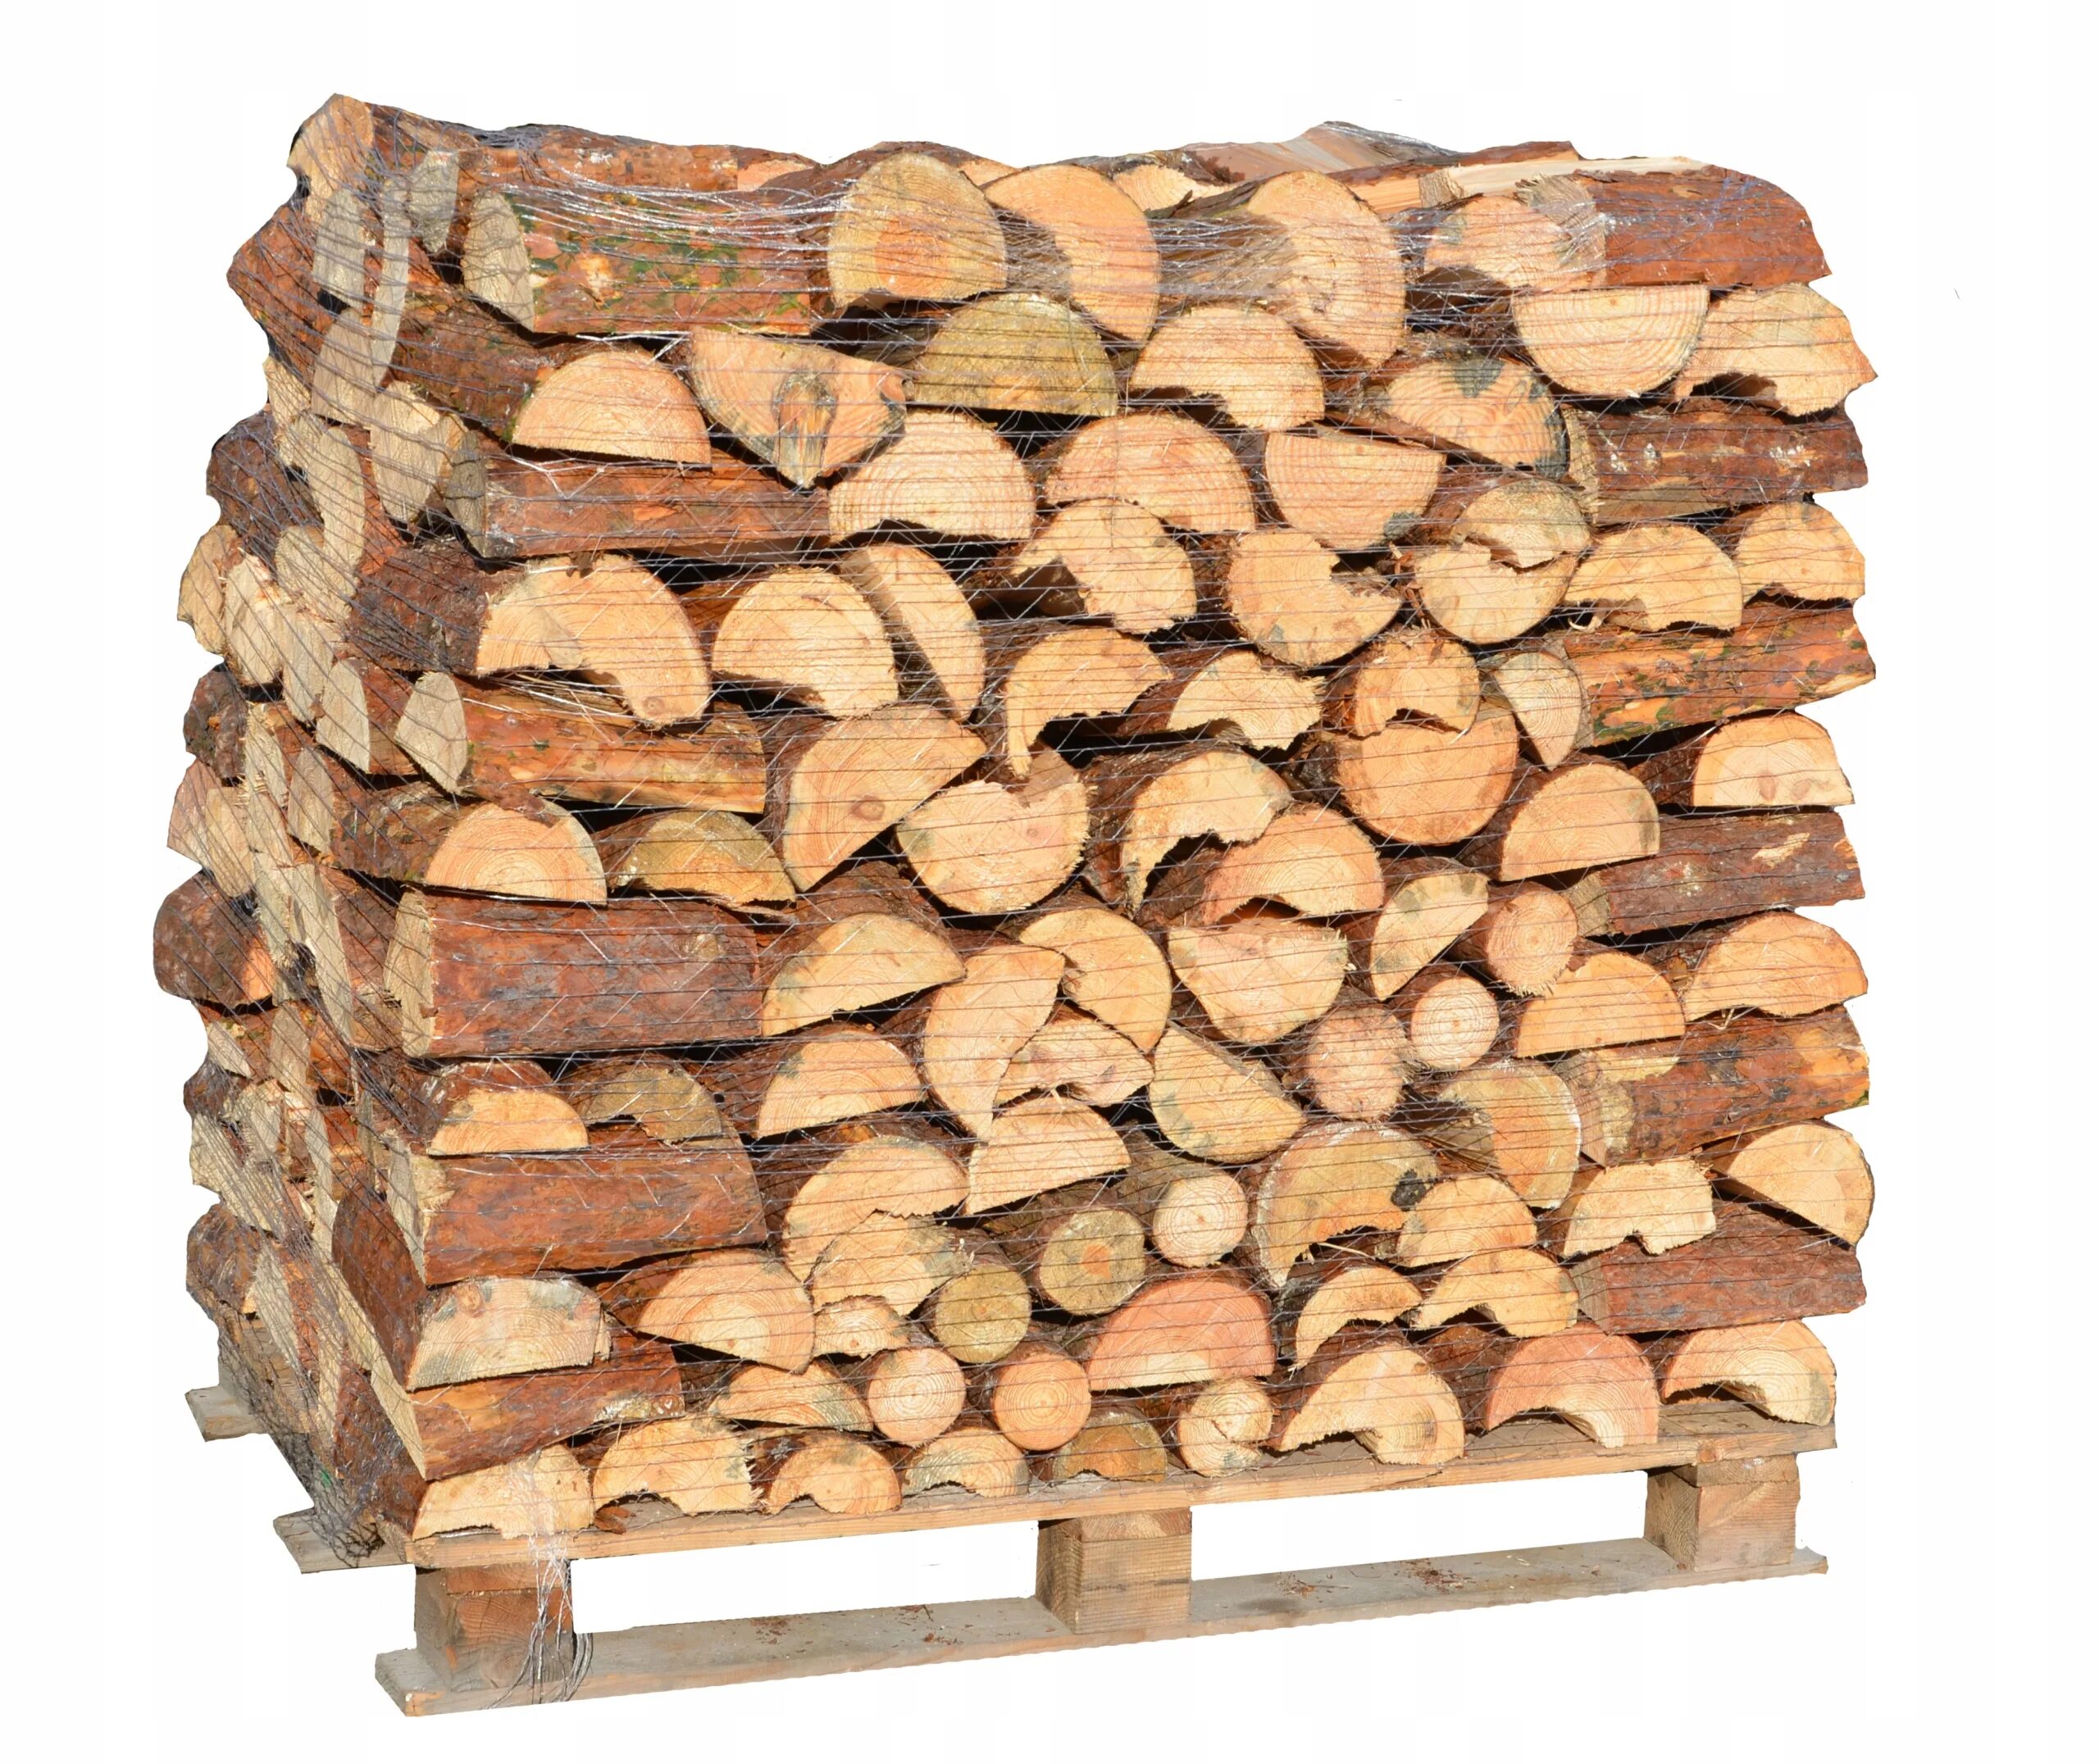 Grillkoff дрова берёзовые, 0.015 м³. Печь на дровах. Сосна колотая дрова. Дрова еловые. Дрова купить в лен